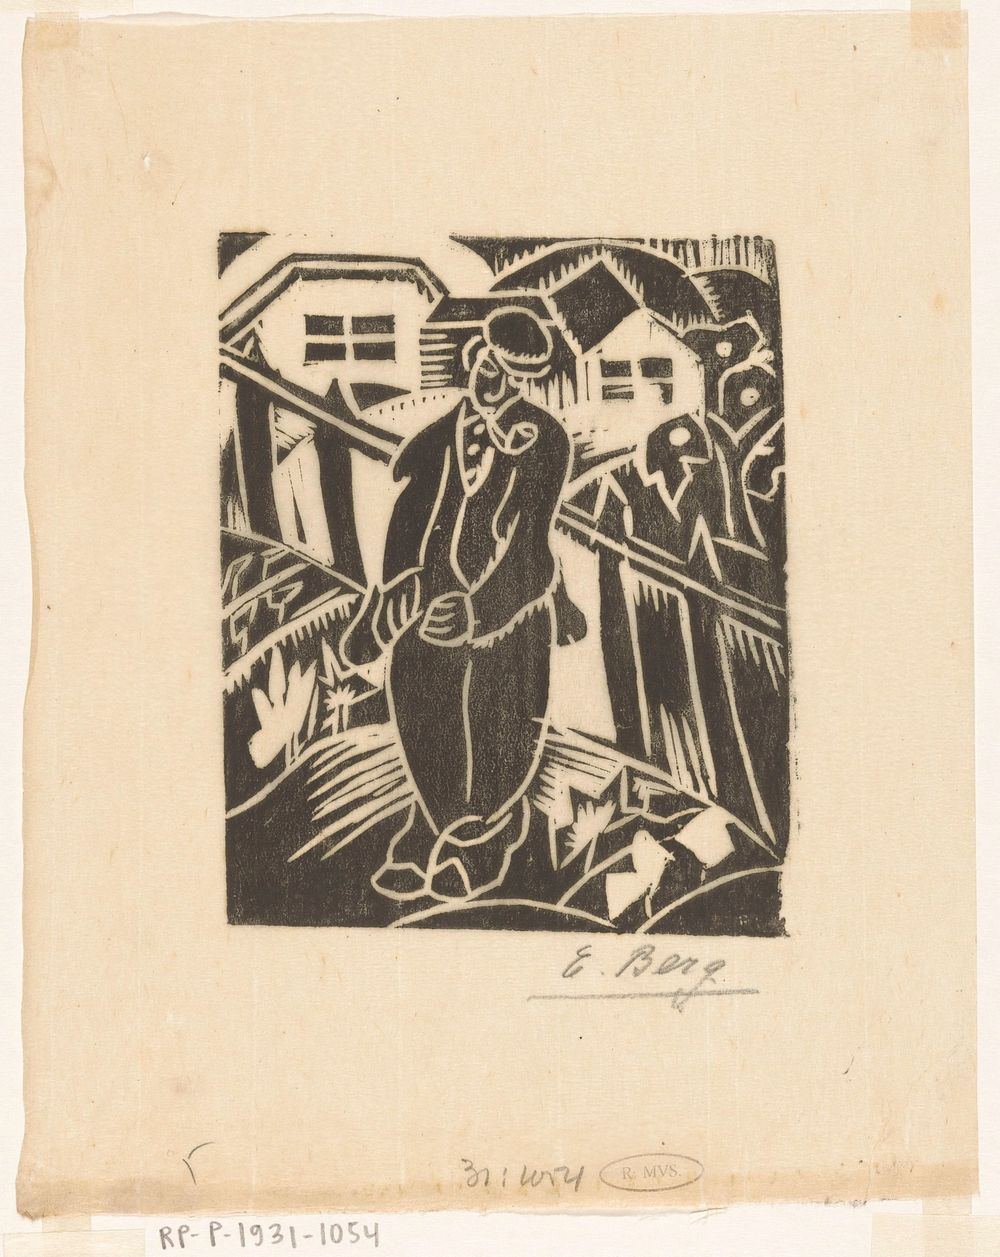 Man in moestuin (c. 1912 - in or before 1931) by Else Berg